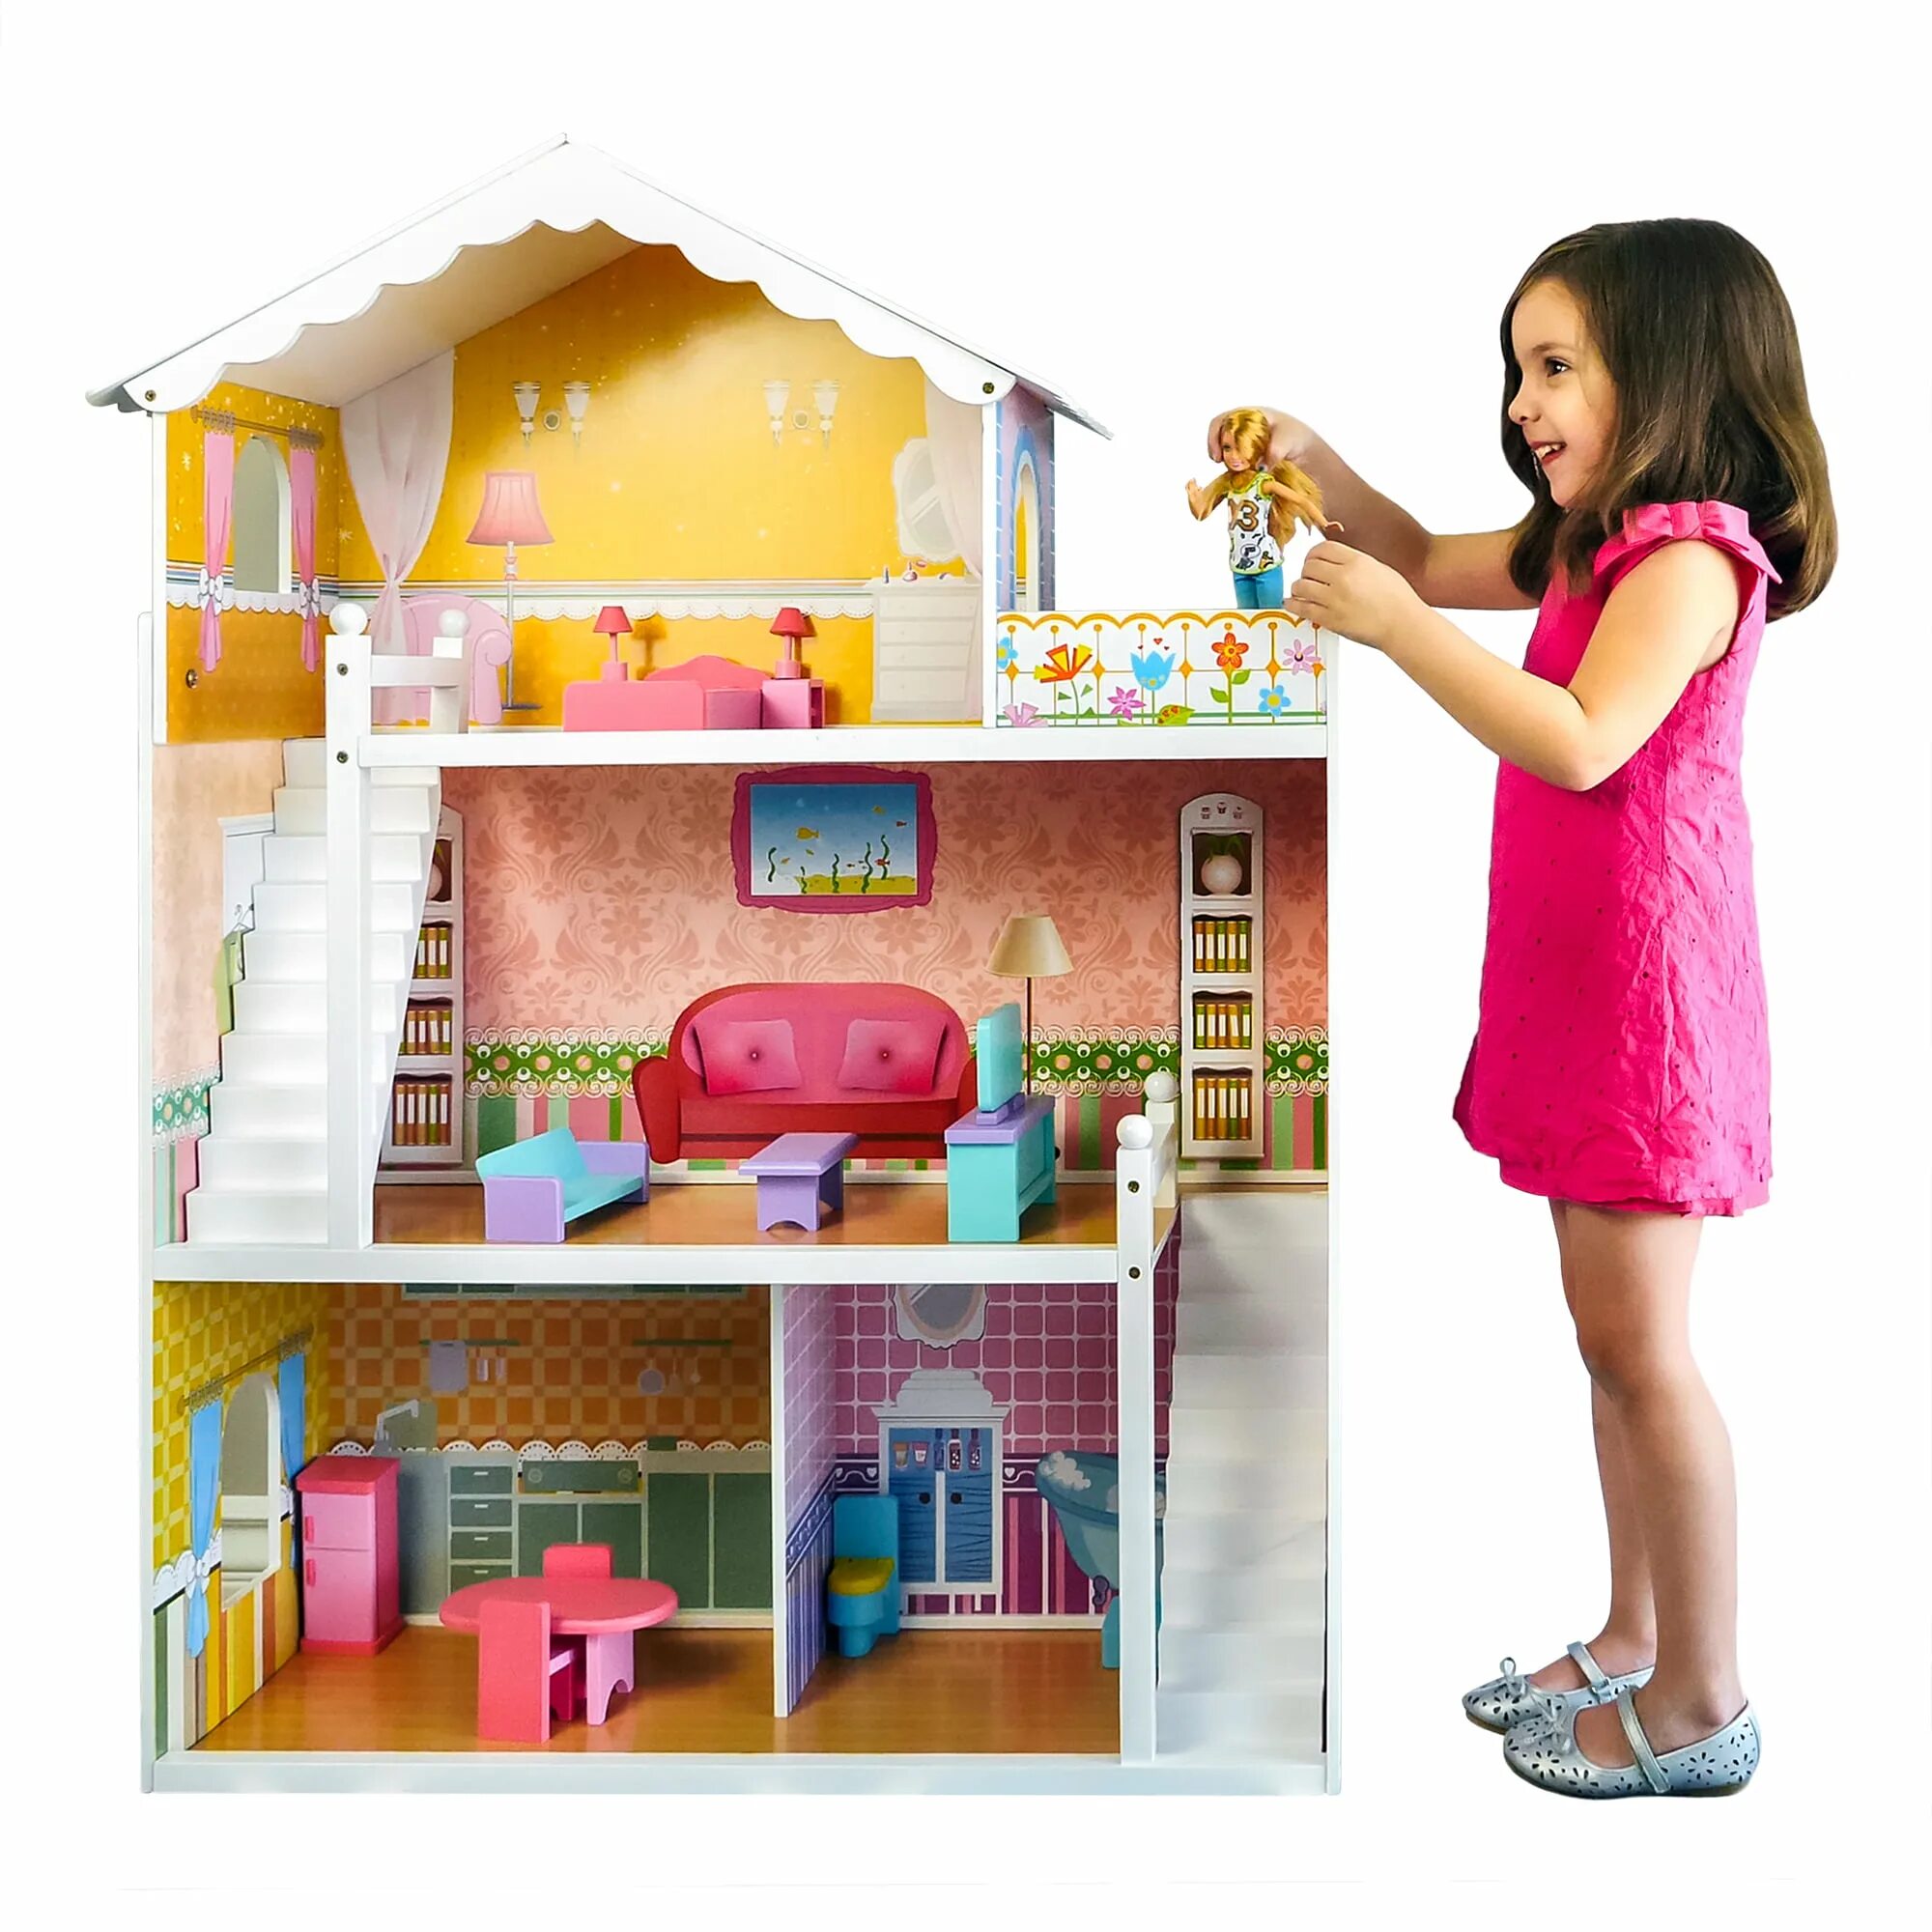 Домик для Барби розовый Dollhouse. Дрим Хаус кукольный домик. Дрим Хаус деревянный кукольный домик. Домик для Барби Дрим Хаус.